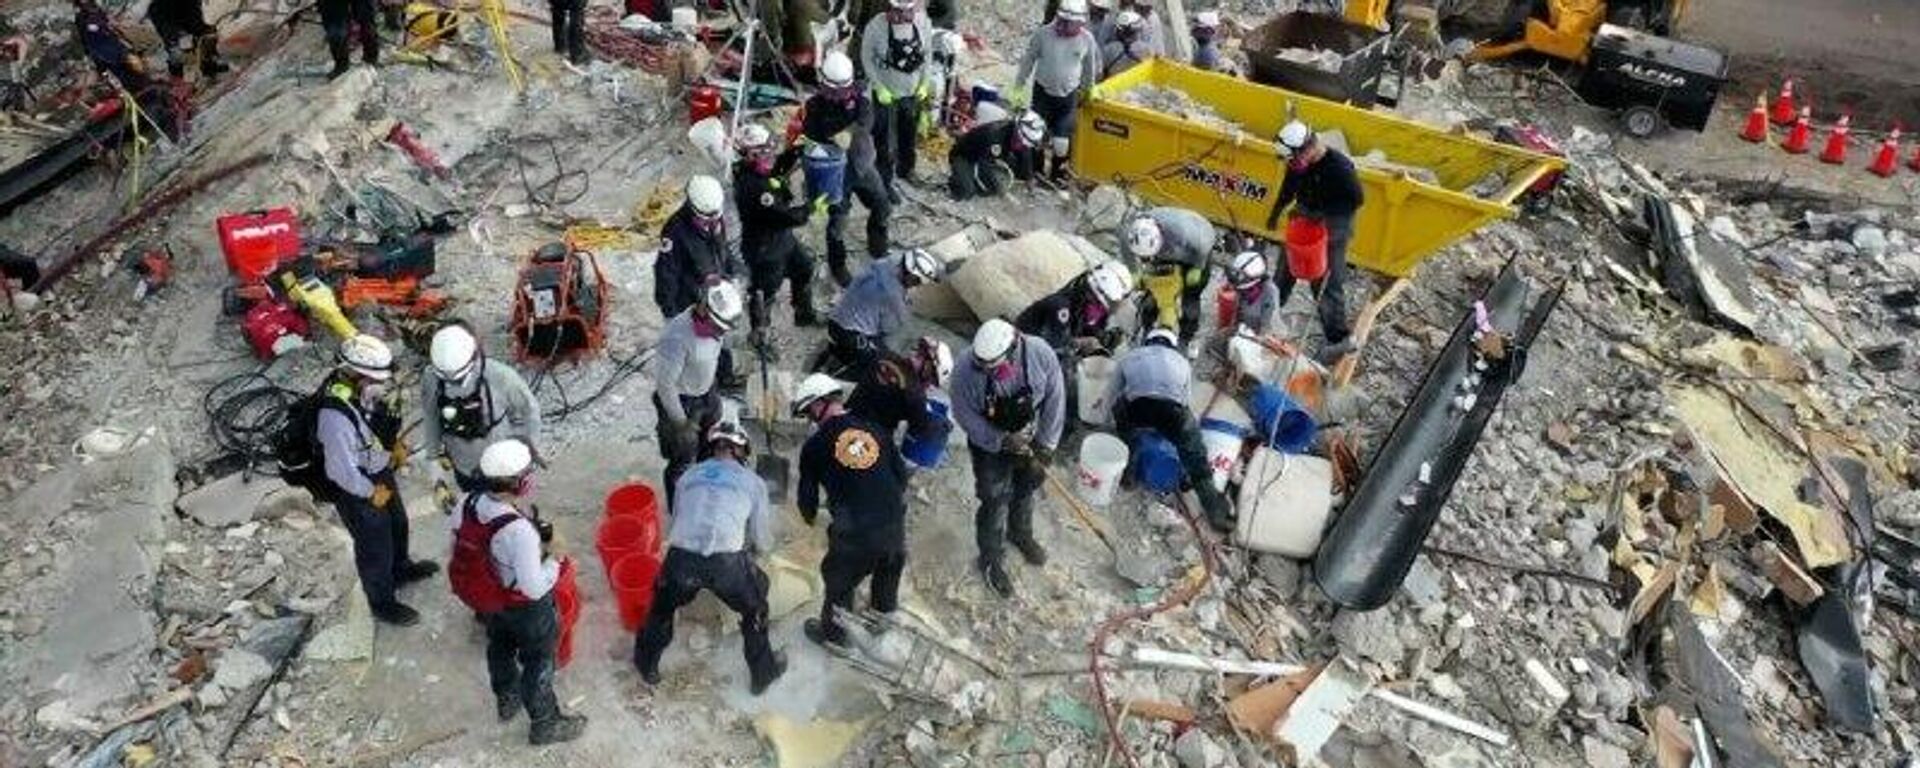 В Майами продолжаются спасательные работы на месте рухнувшего дома - видео - Sputnik Беларусь, 1920, 02.07.2021